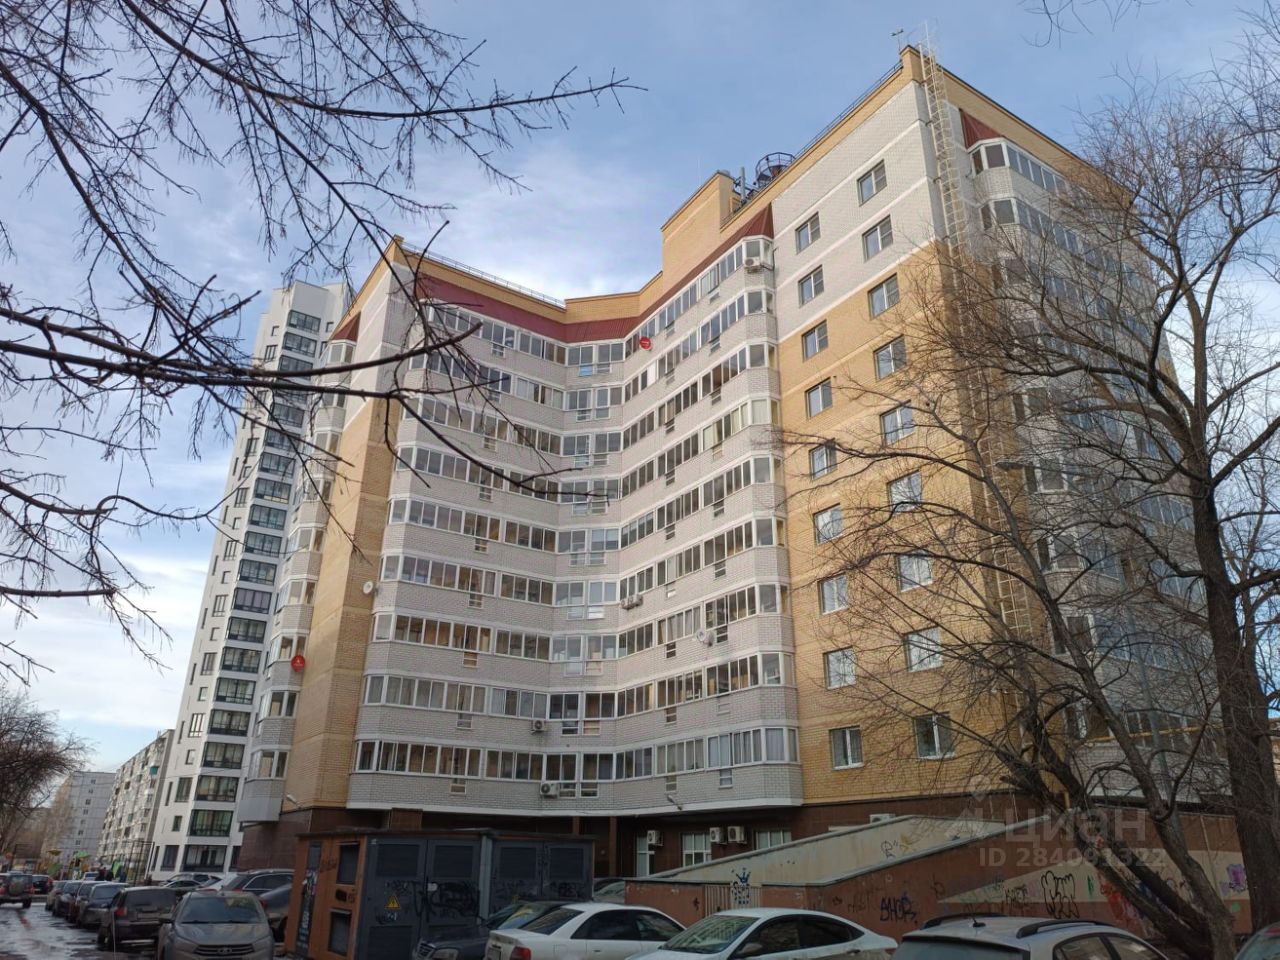 Уютная квартира на 8 этаже в Екатеринбурге. Современный дом, удобное расположение. Идеально для краткосрочной аренды.